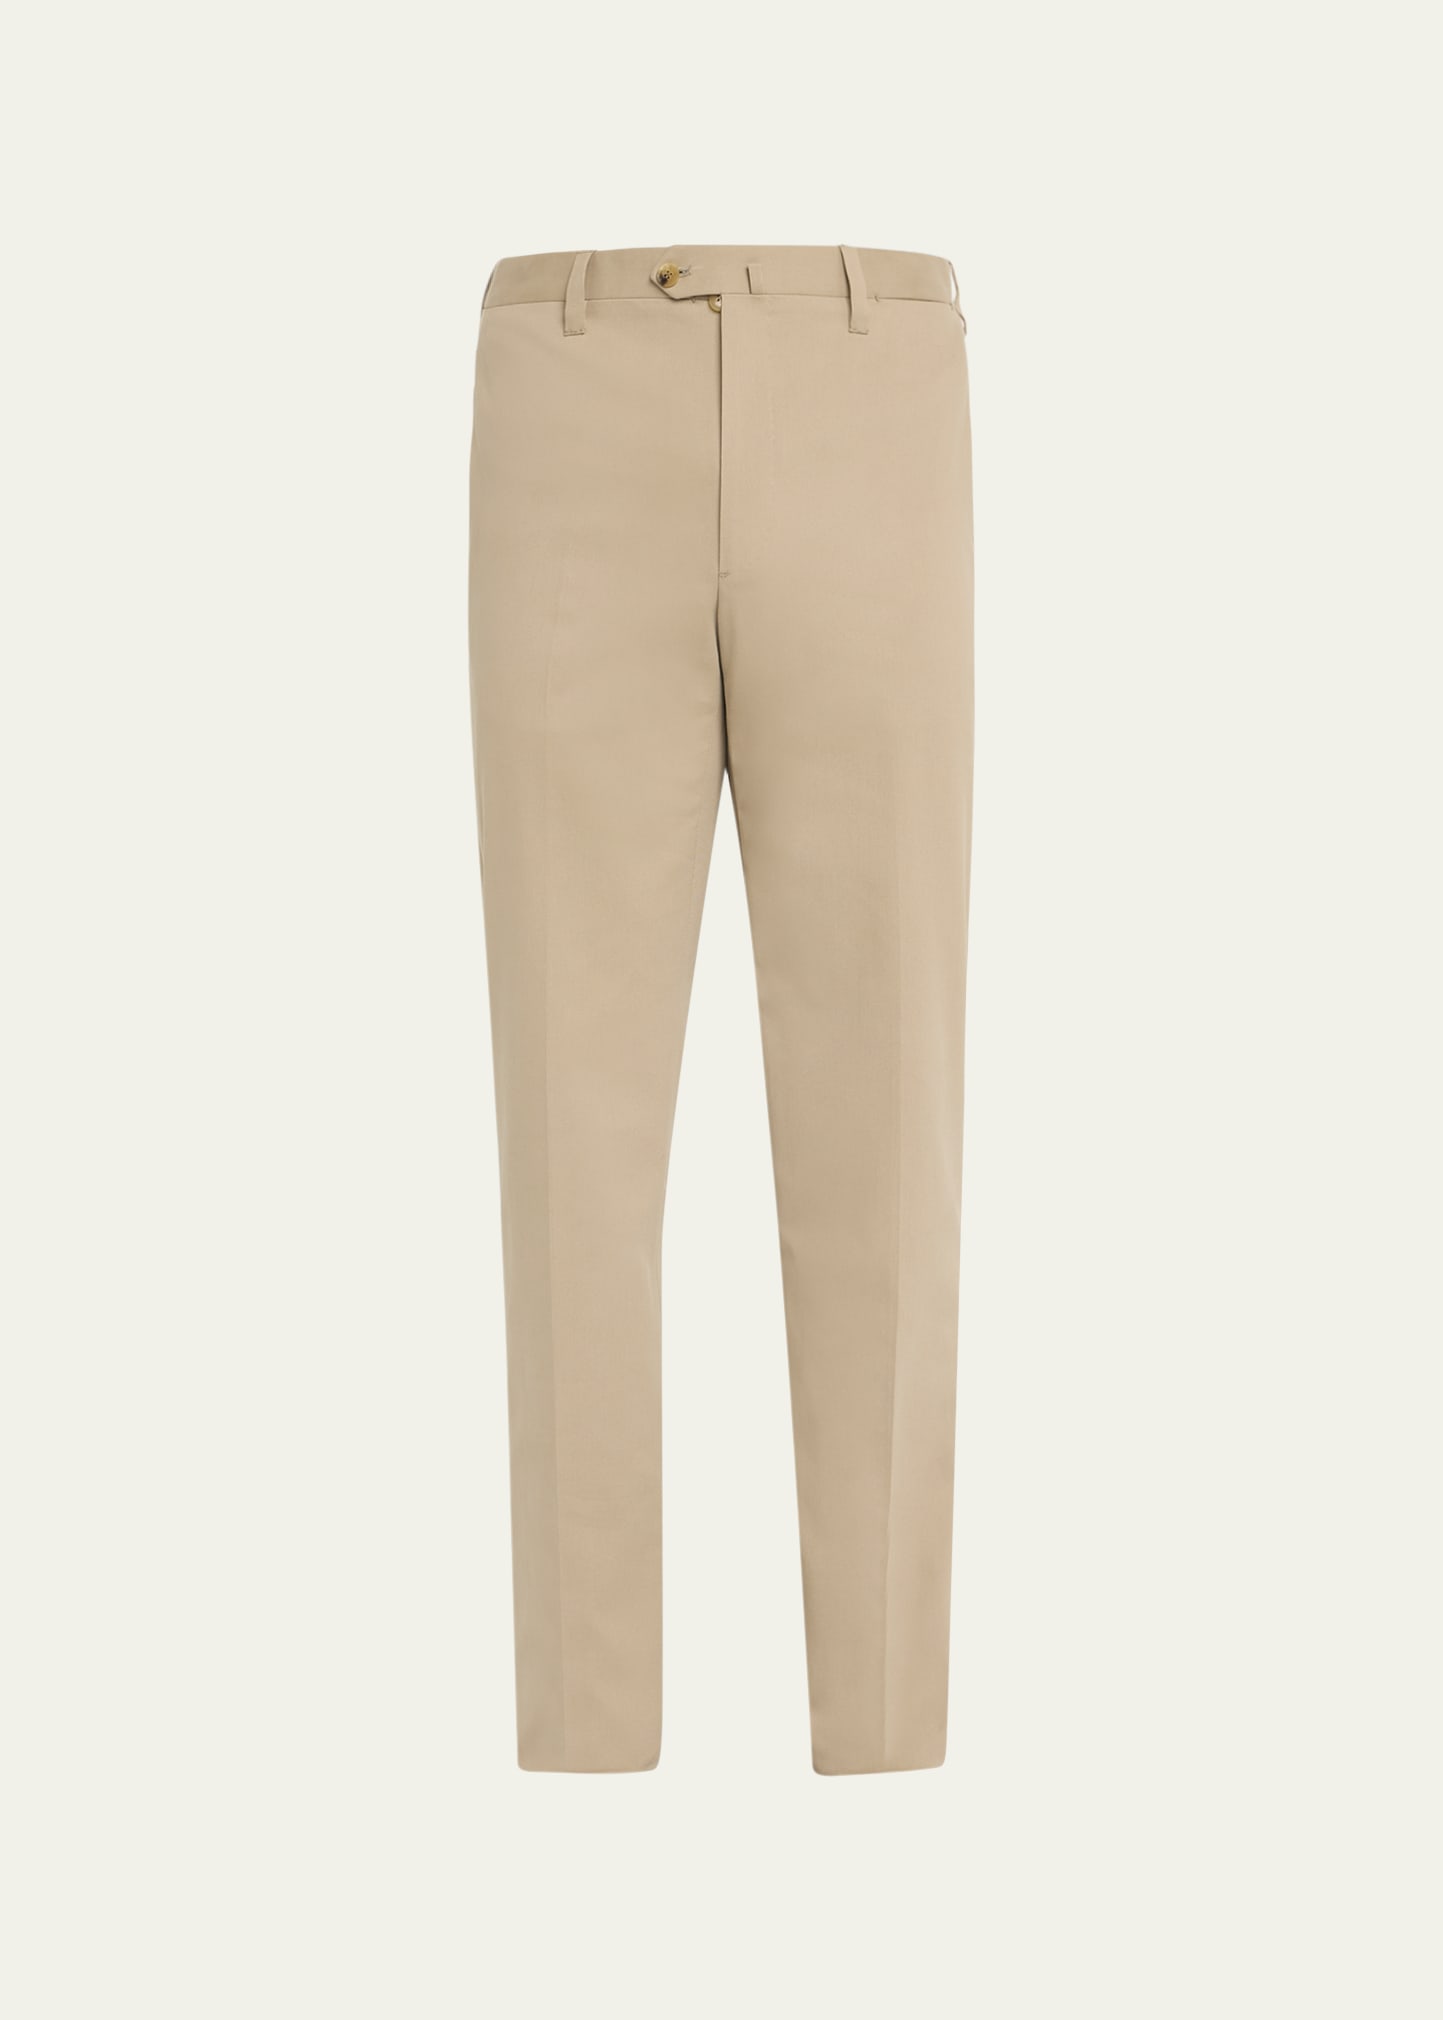 Men's Cotton-Cashmere Twill Pants